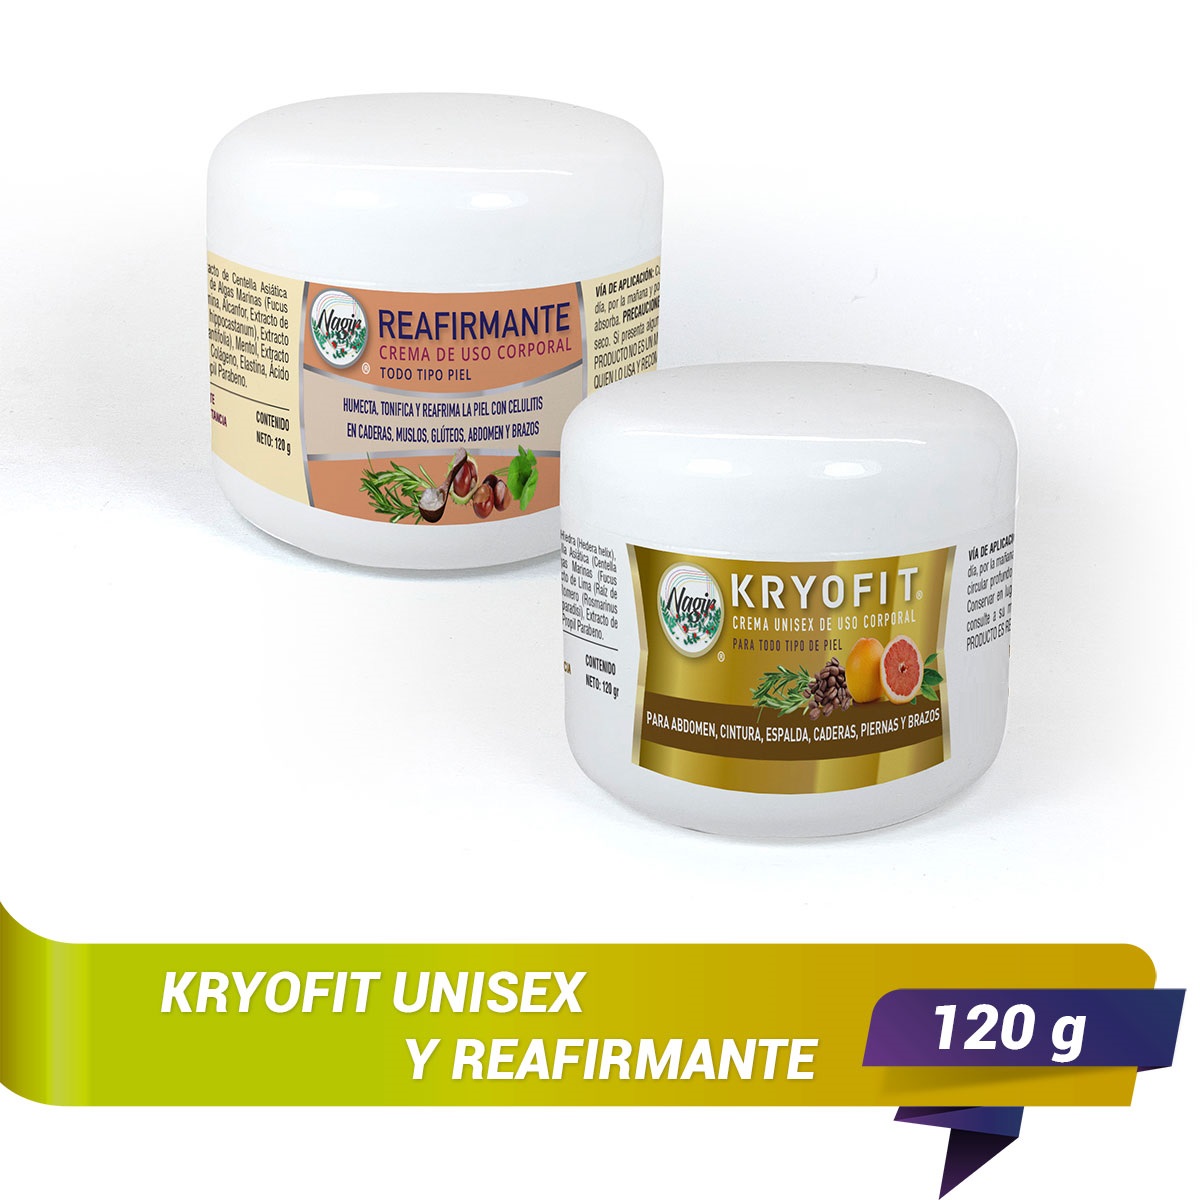 KIT Reductor Cremas KRYOFIT y Reafirmante NAGIR Cosmética para Mujer de 250  g